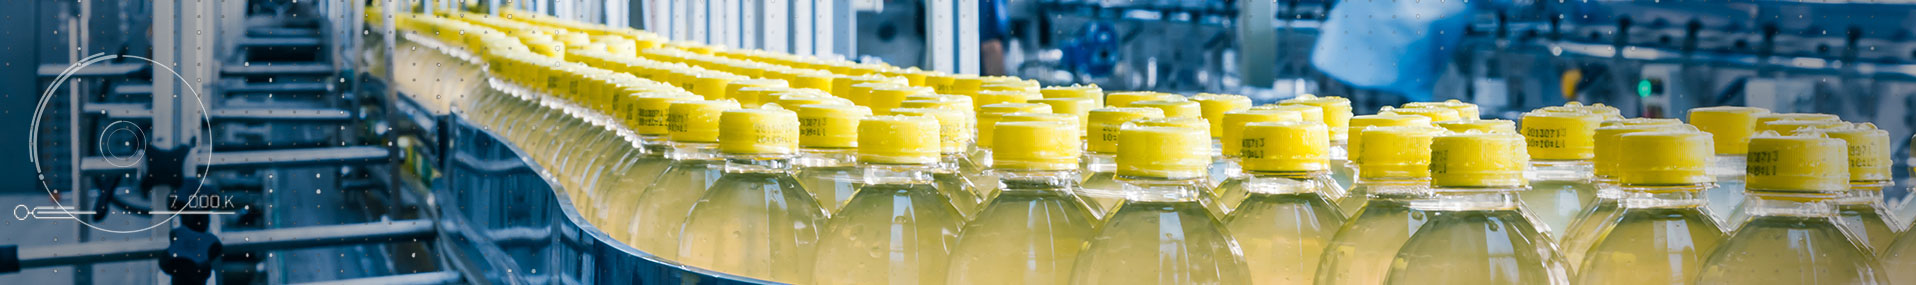 Beverage bottles on conveyor belt